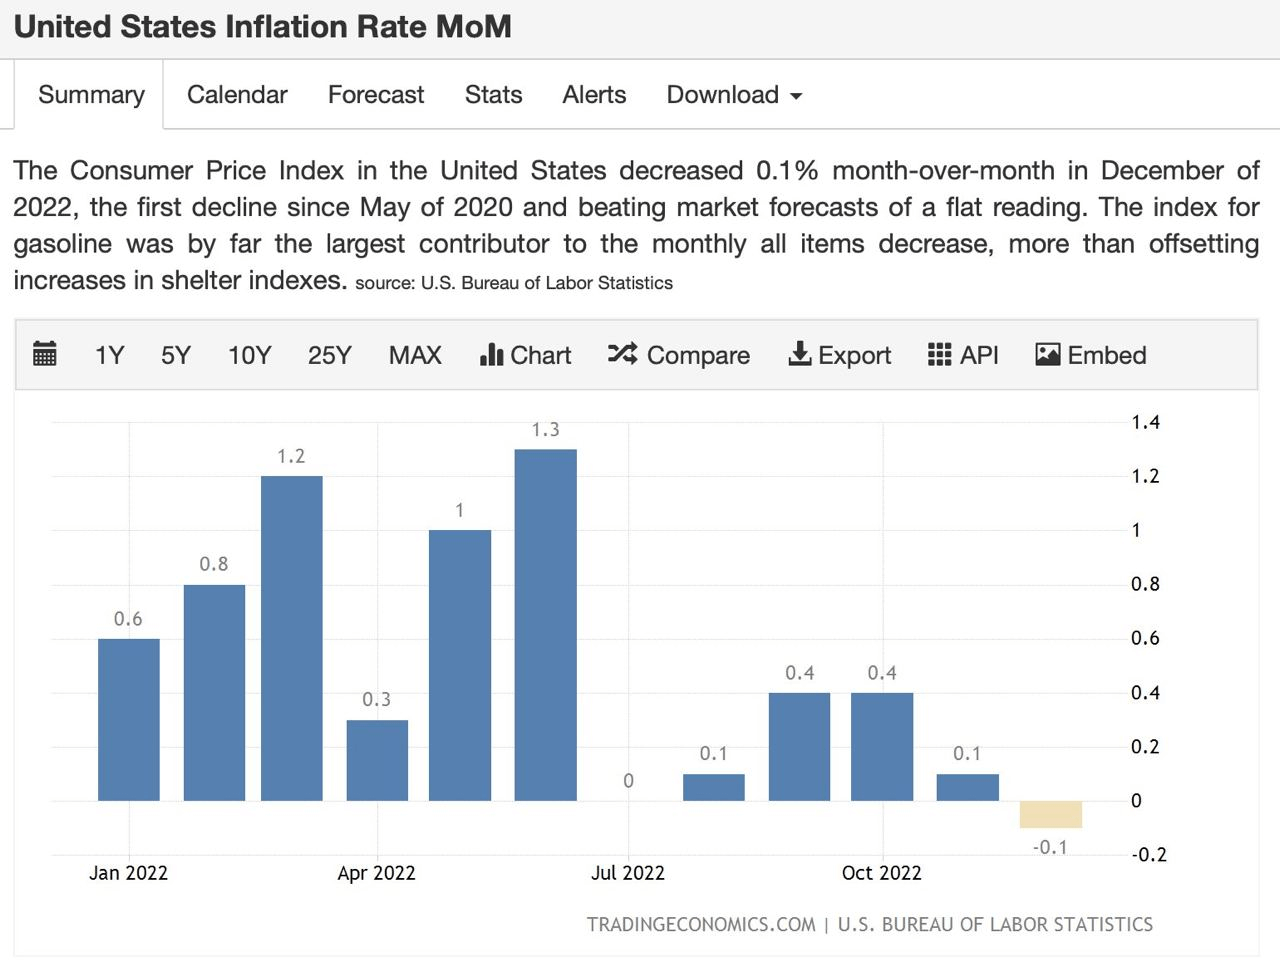 U.S MoM inflation